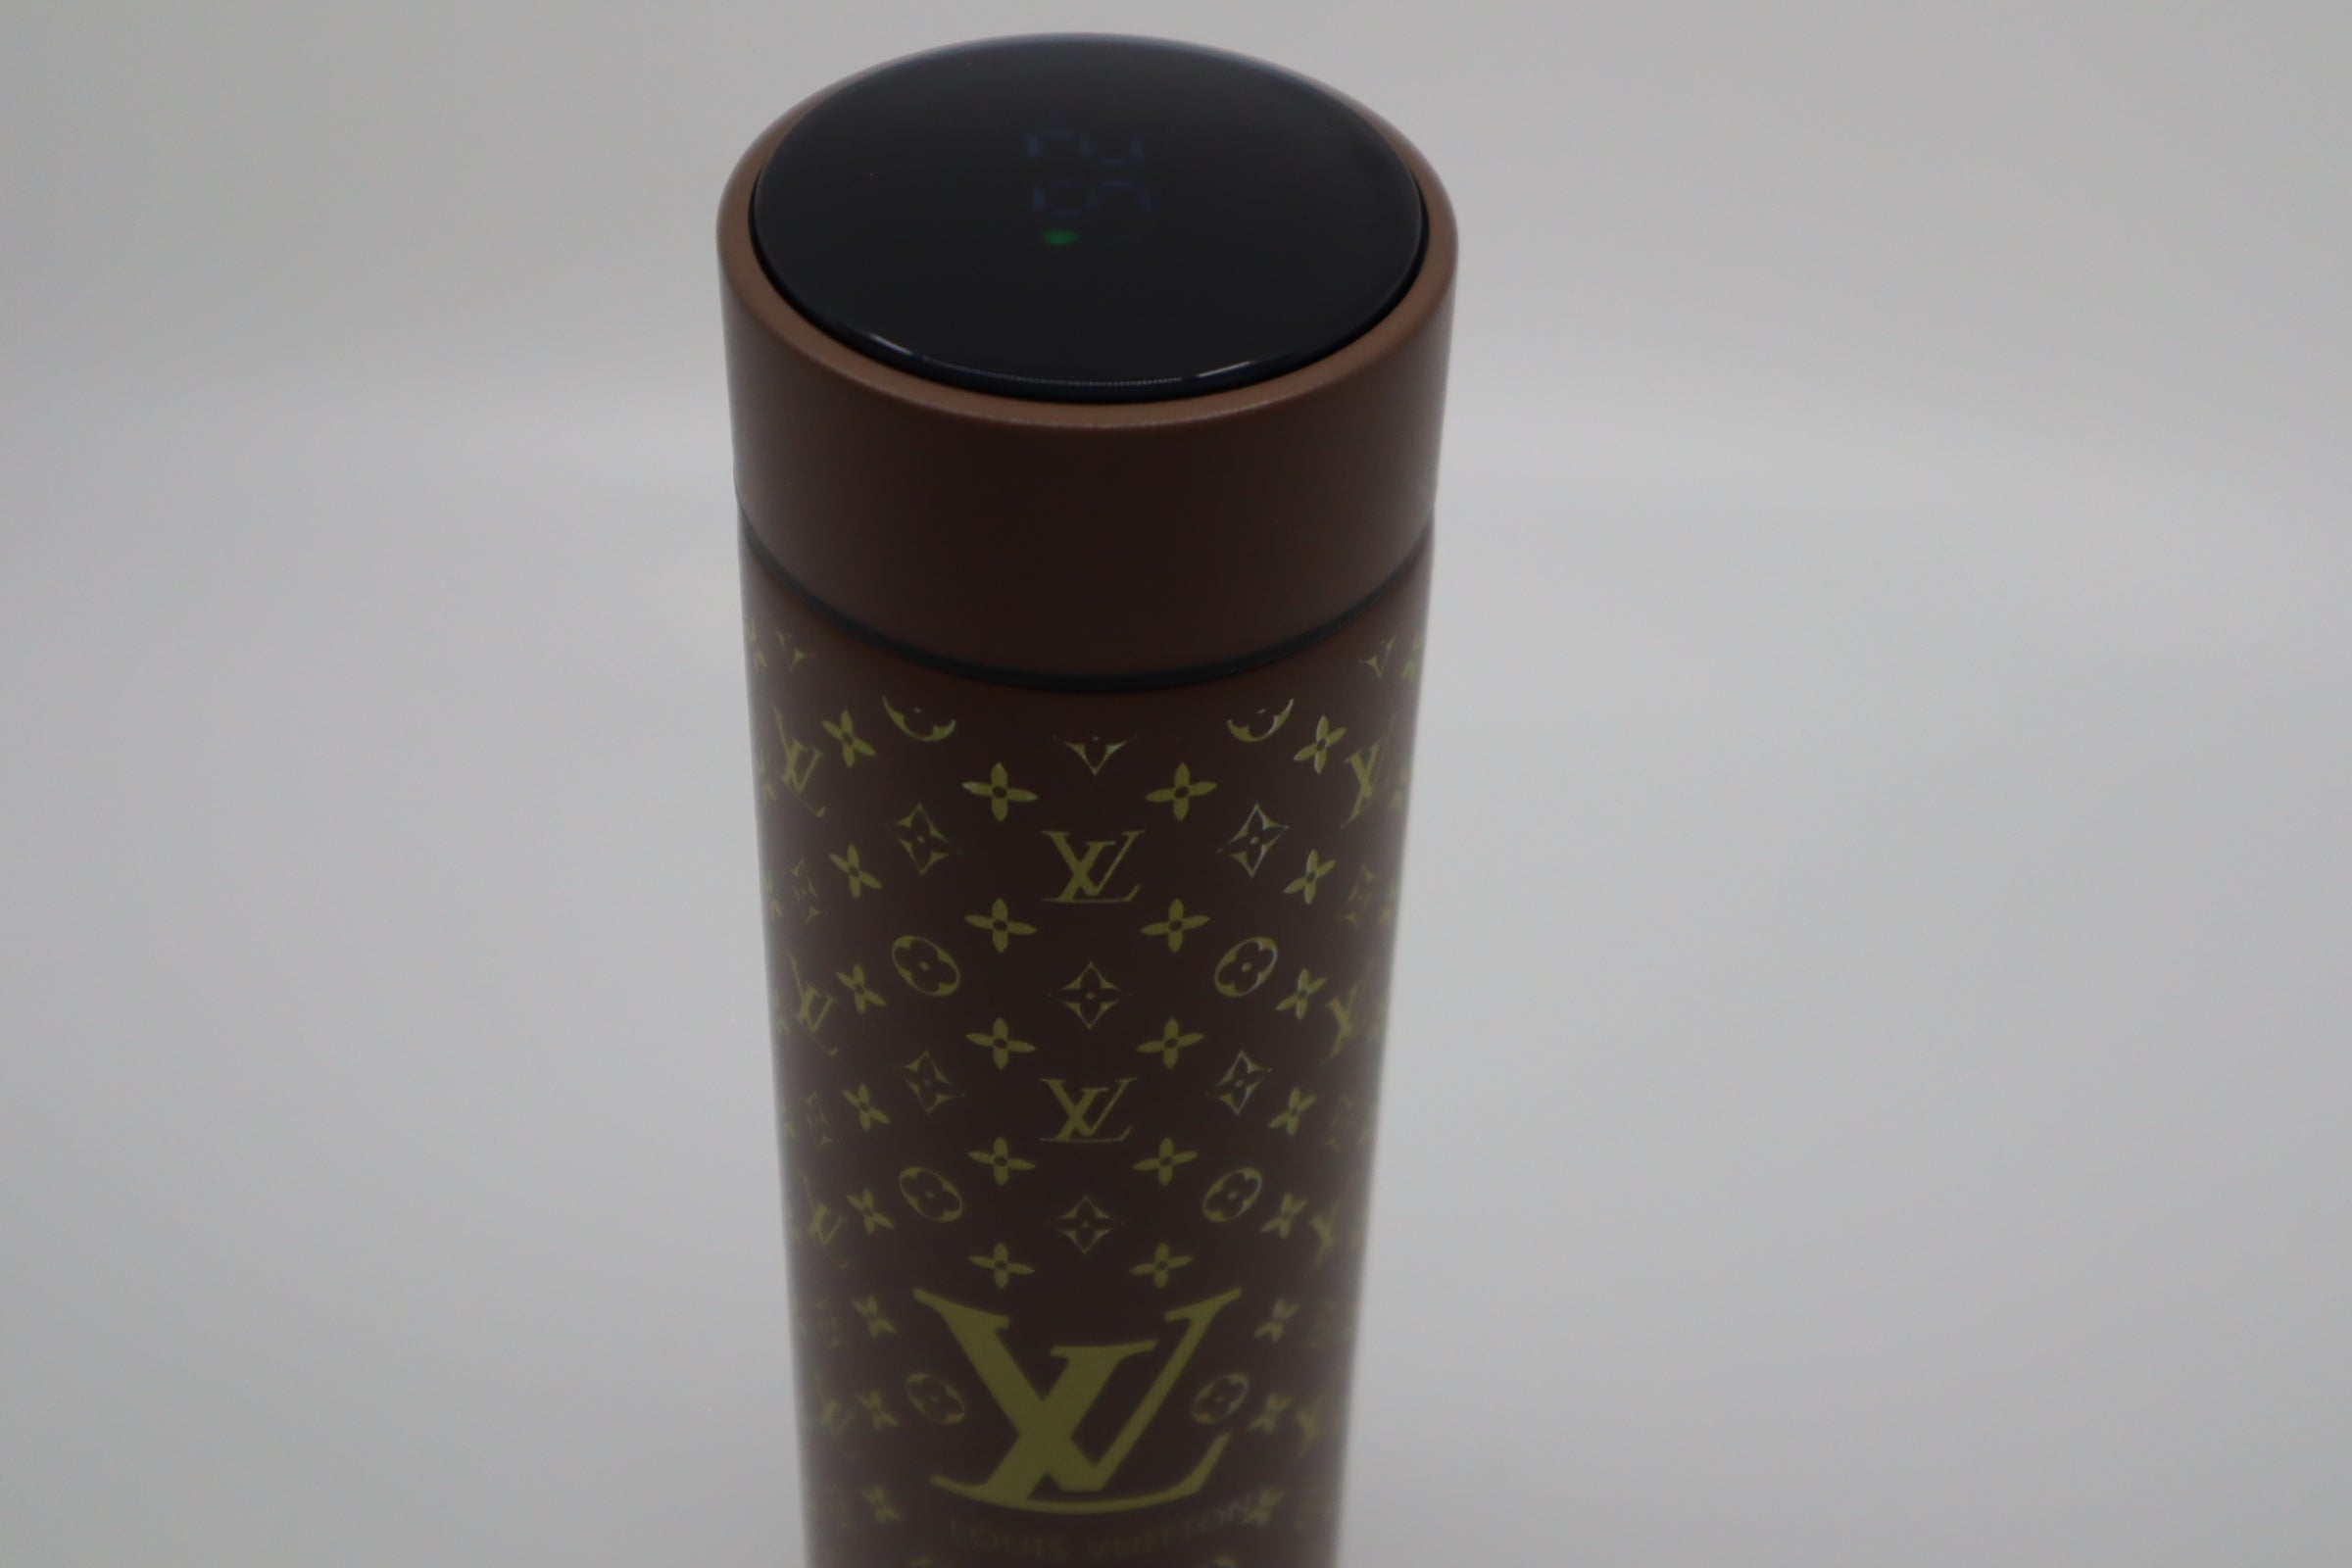 Louis Vuitton Digital Tumbler Bottle